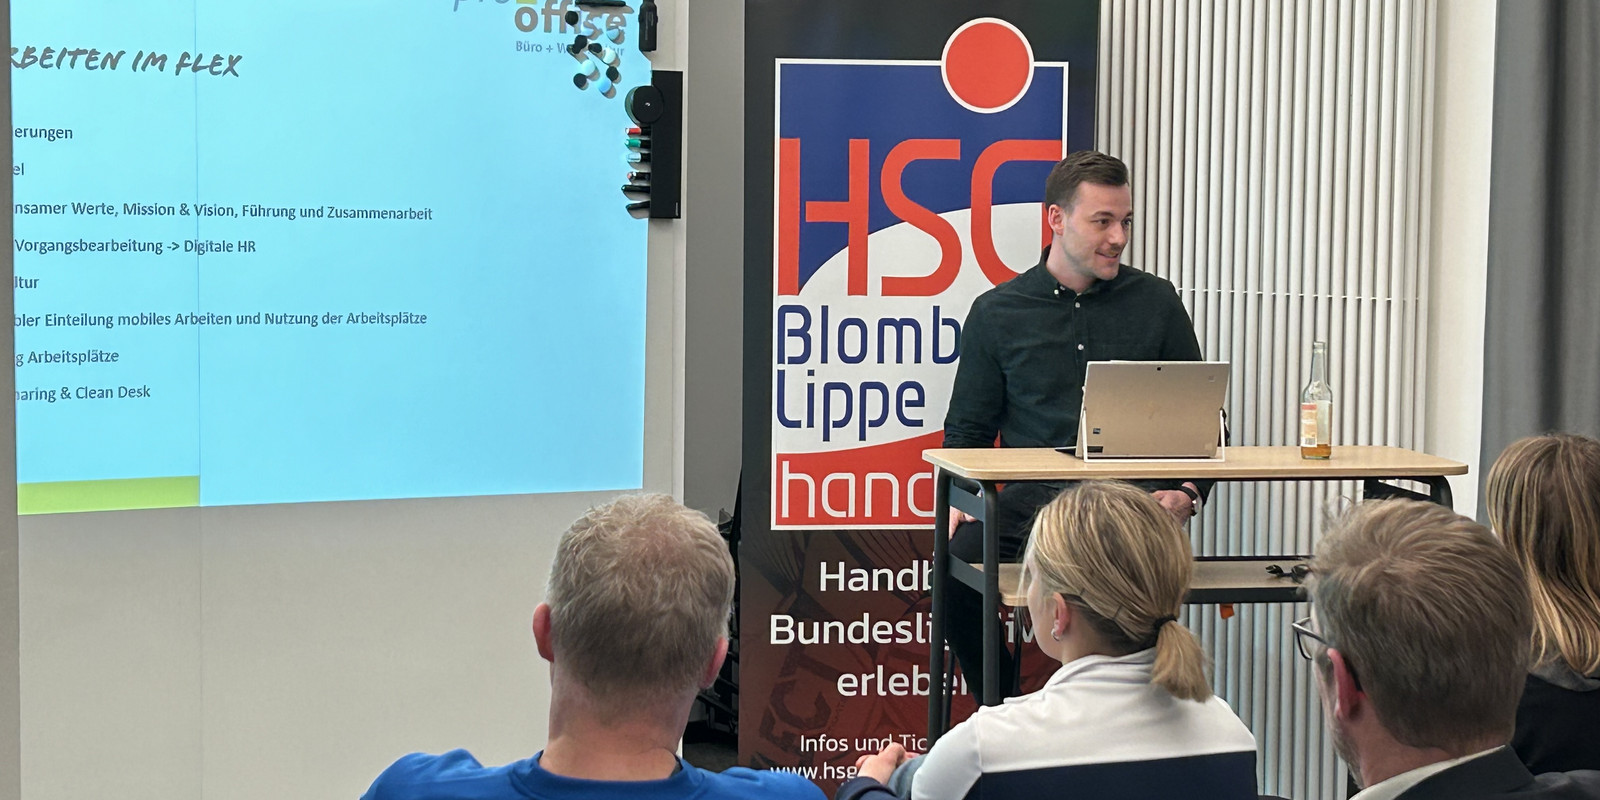 Ein Abend voller Partnerschaft und Innovation: Die HSG Blomberg-Lippe zu Gast bei pro office Bild 3